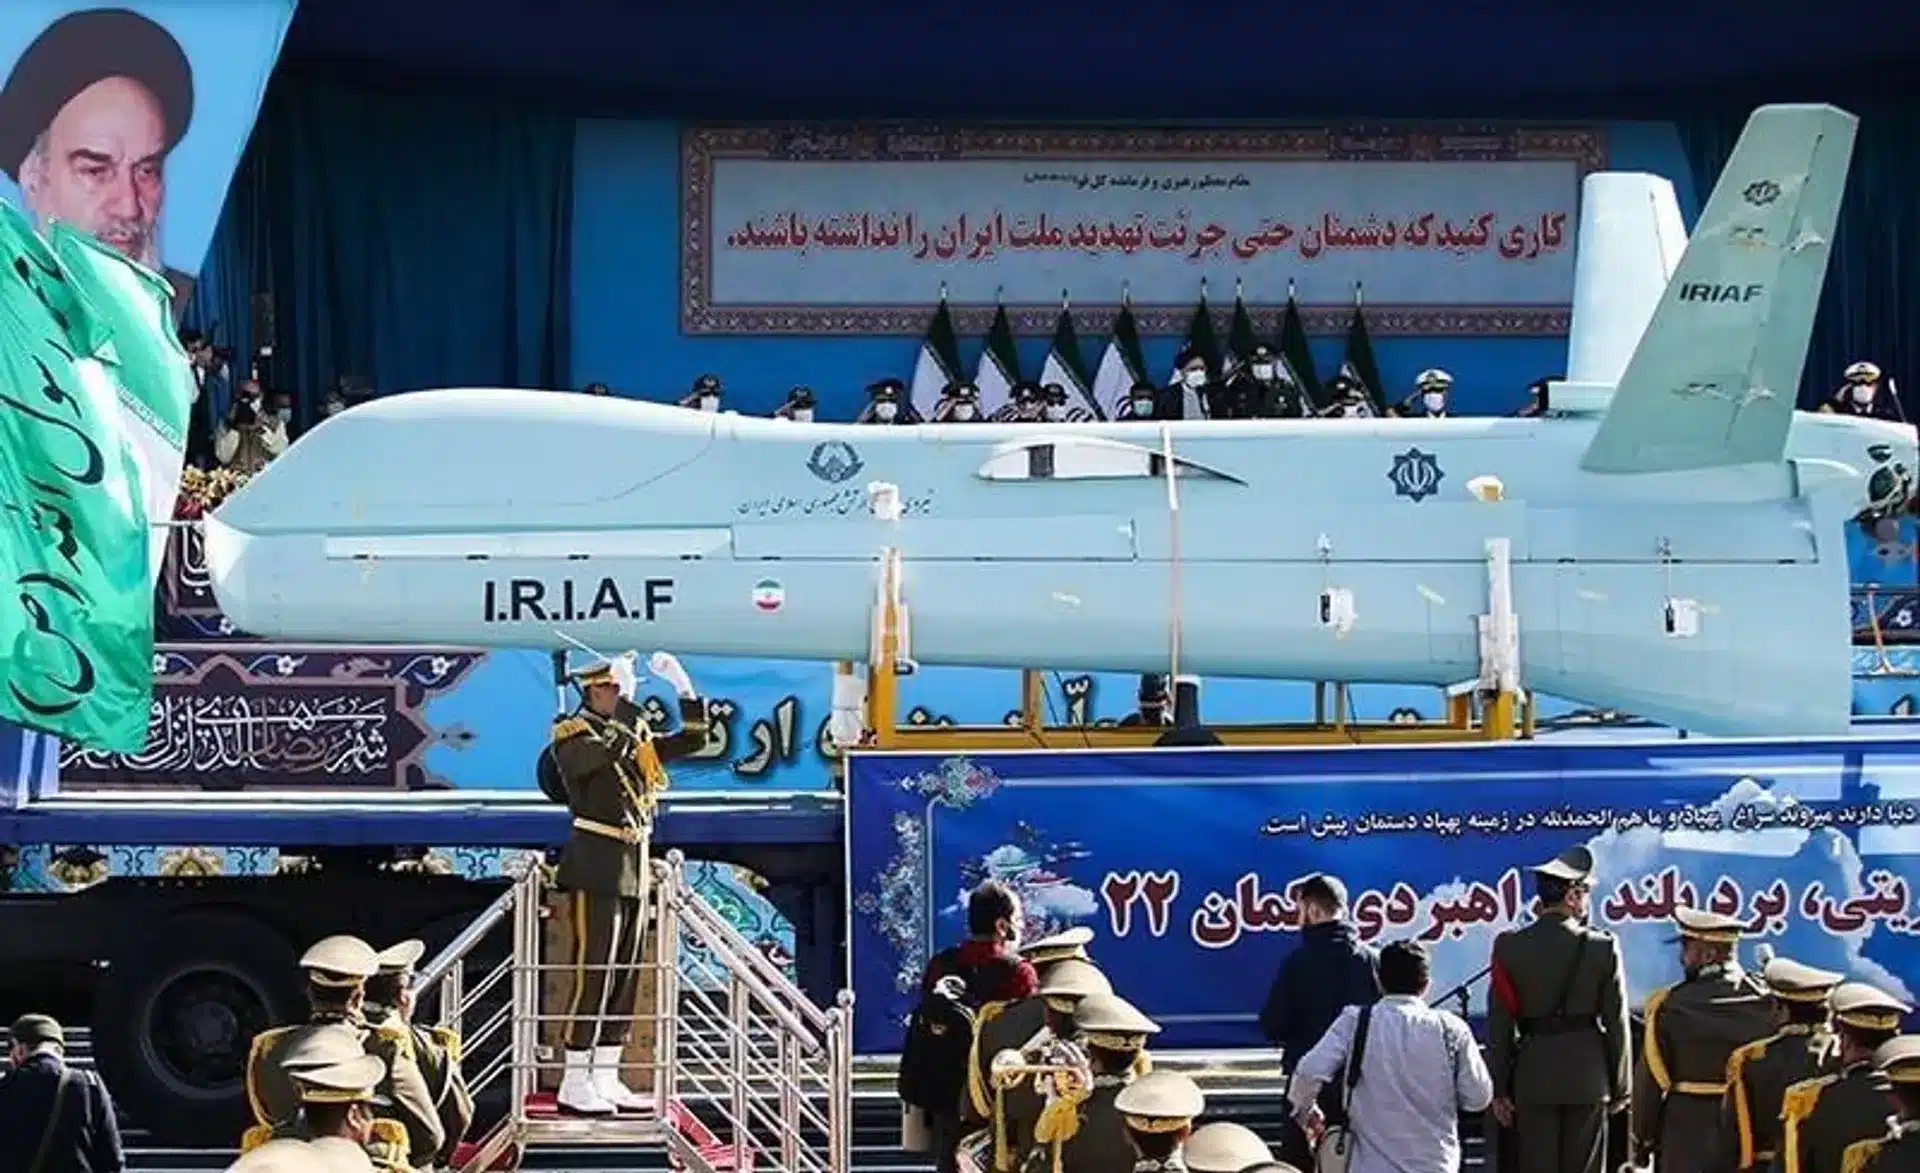 تعرف على أحدث طائرة إيرانية إنتحارية Me'raj-532